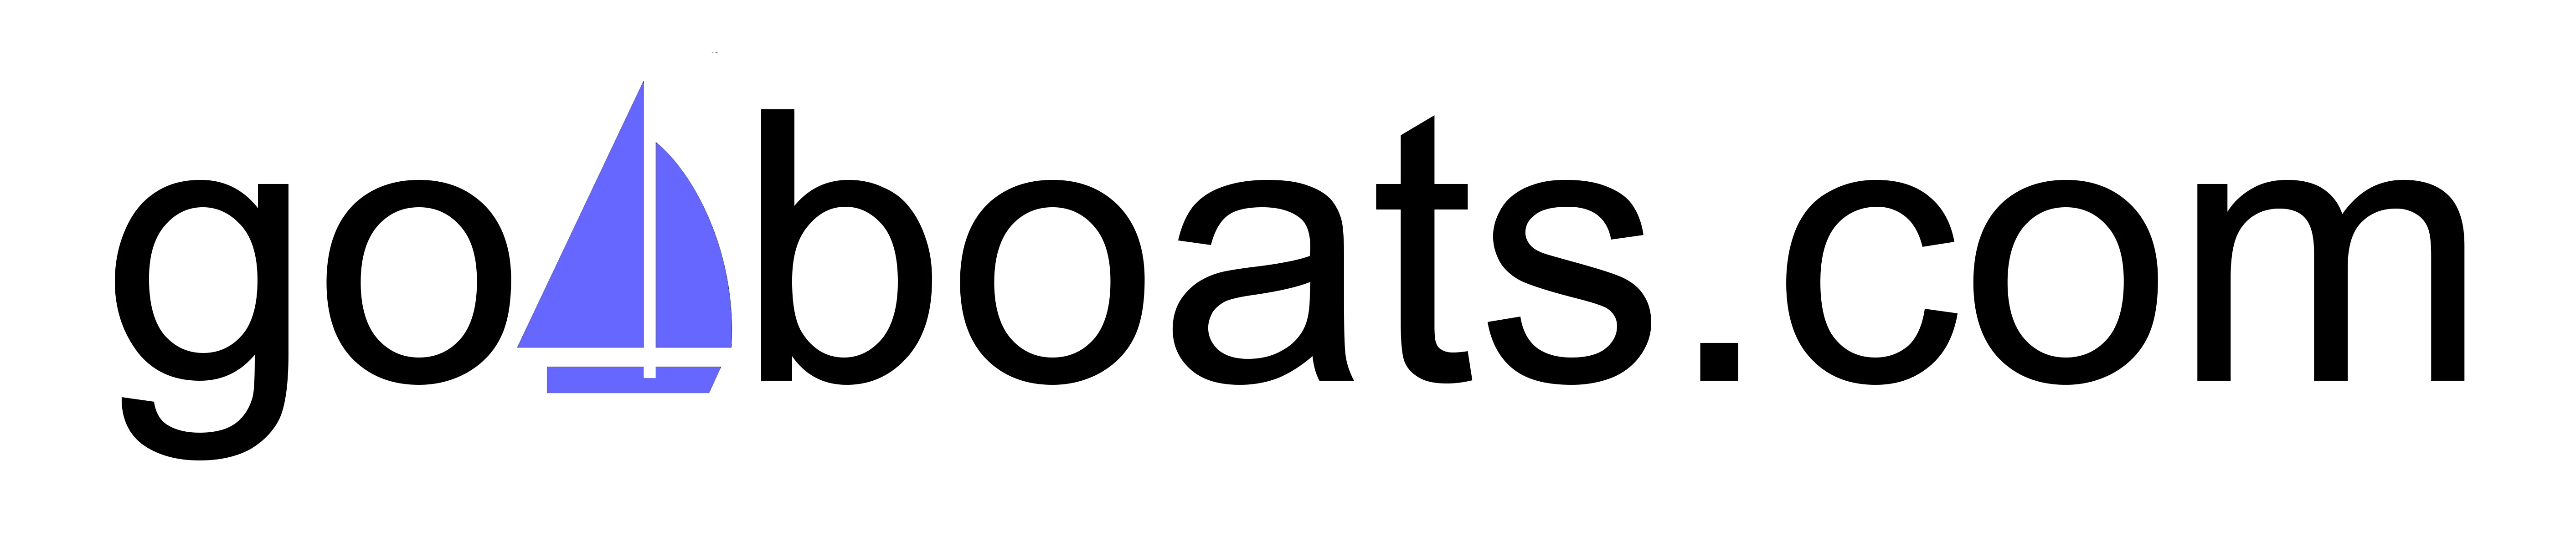 go4boats.com